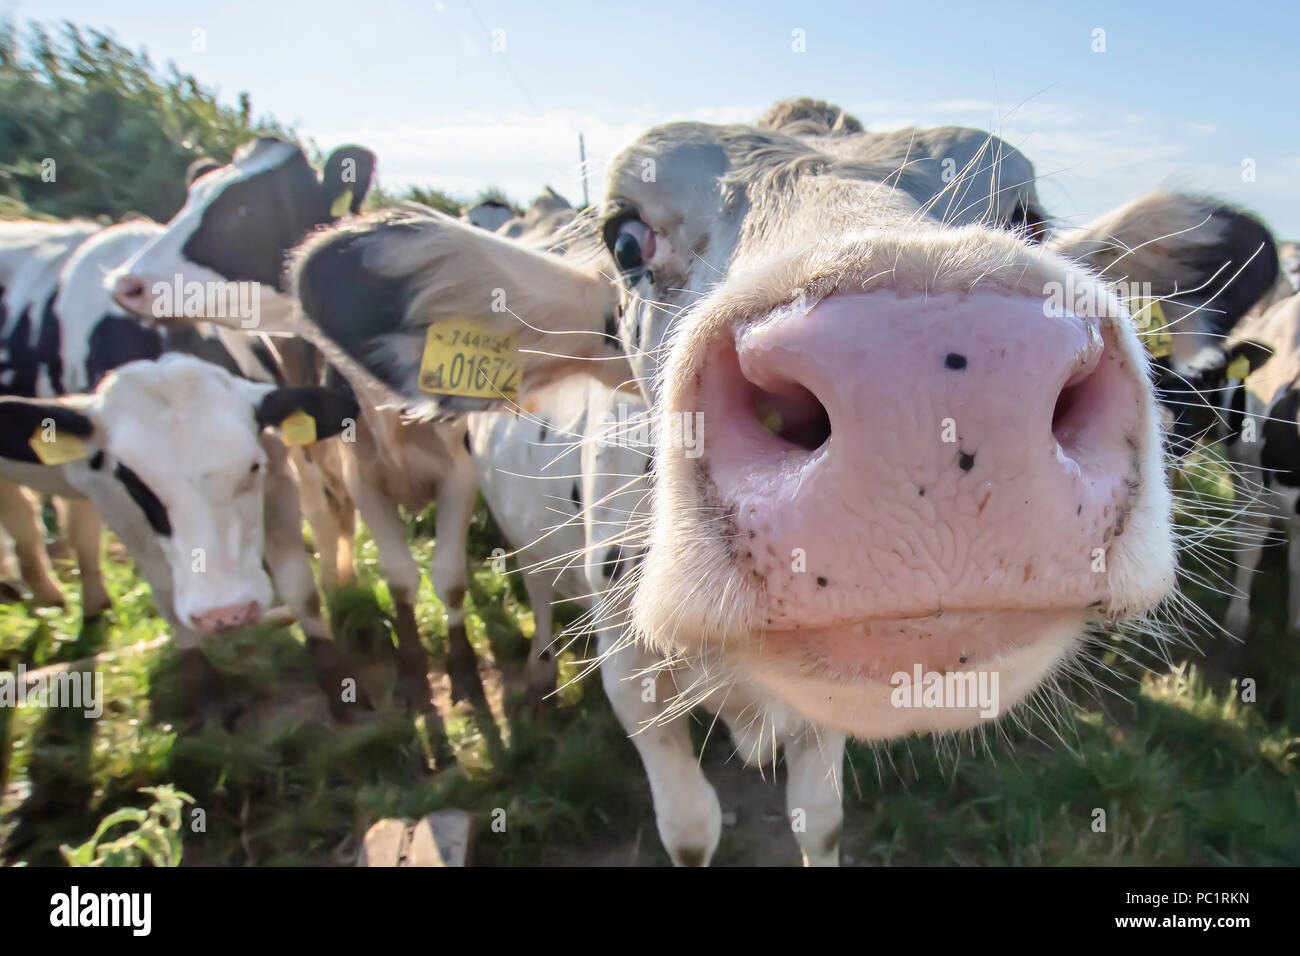 Vacca bianca close up ritratto su pascolo.animale da azienda cercando nella fotocamera con obiettivo grandangolare.divertenti e animali adorabili.Bovini Uk.Funny vacche. Foto Stock